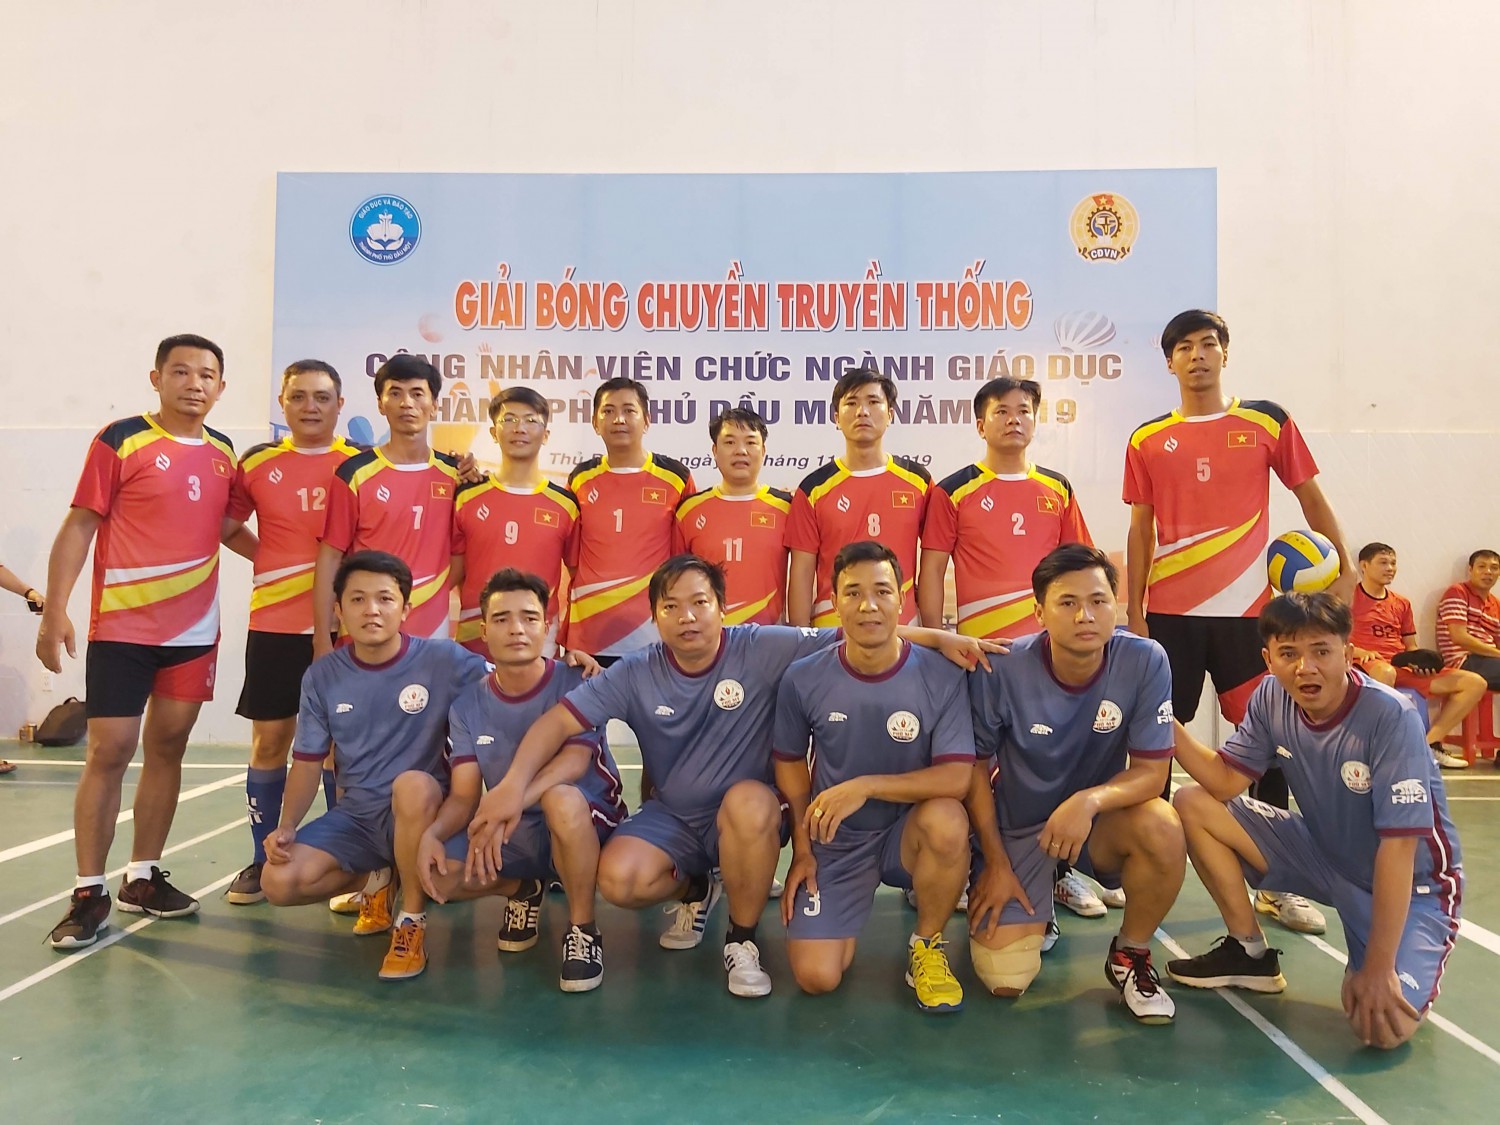 Trận chung kết - Trao giải Giải bóng chuyền truyền thống ngành giáo dục Thành phố năm 2019